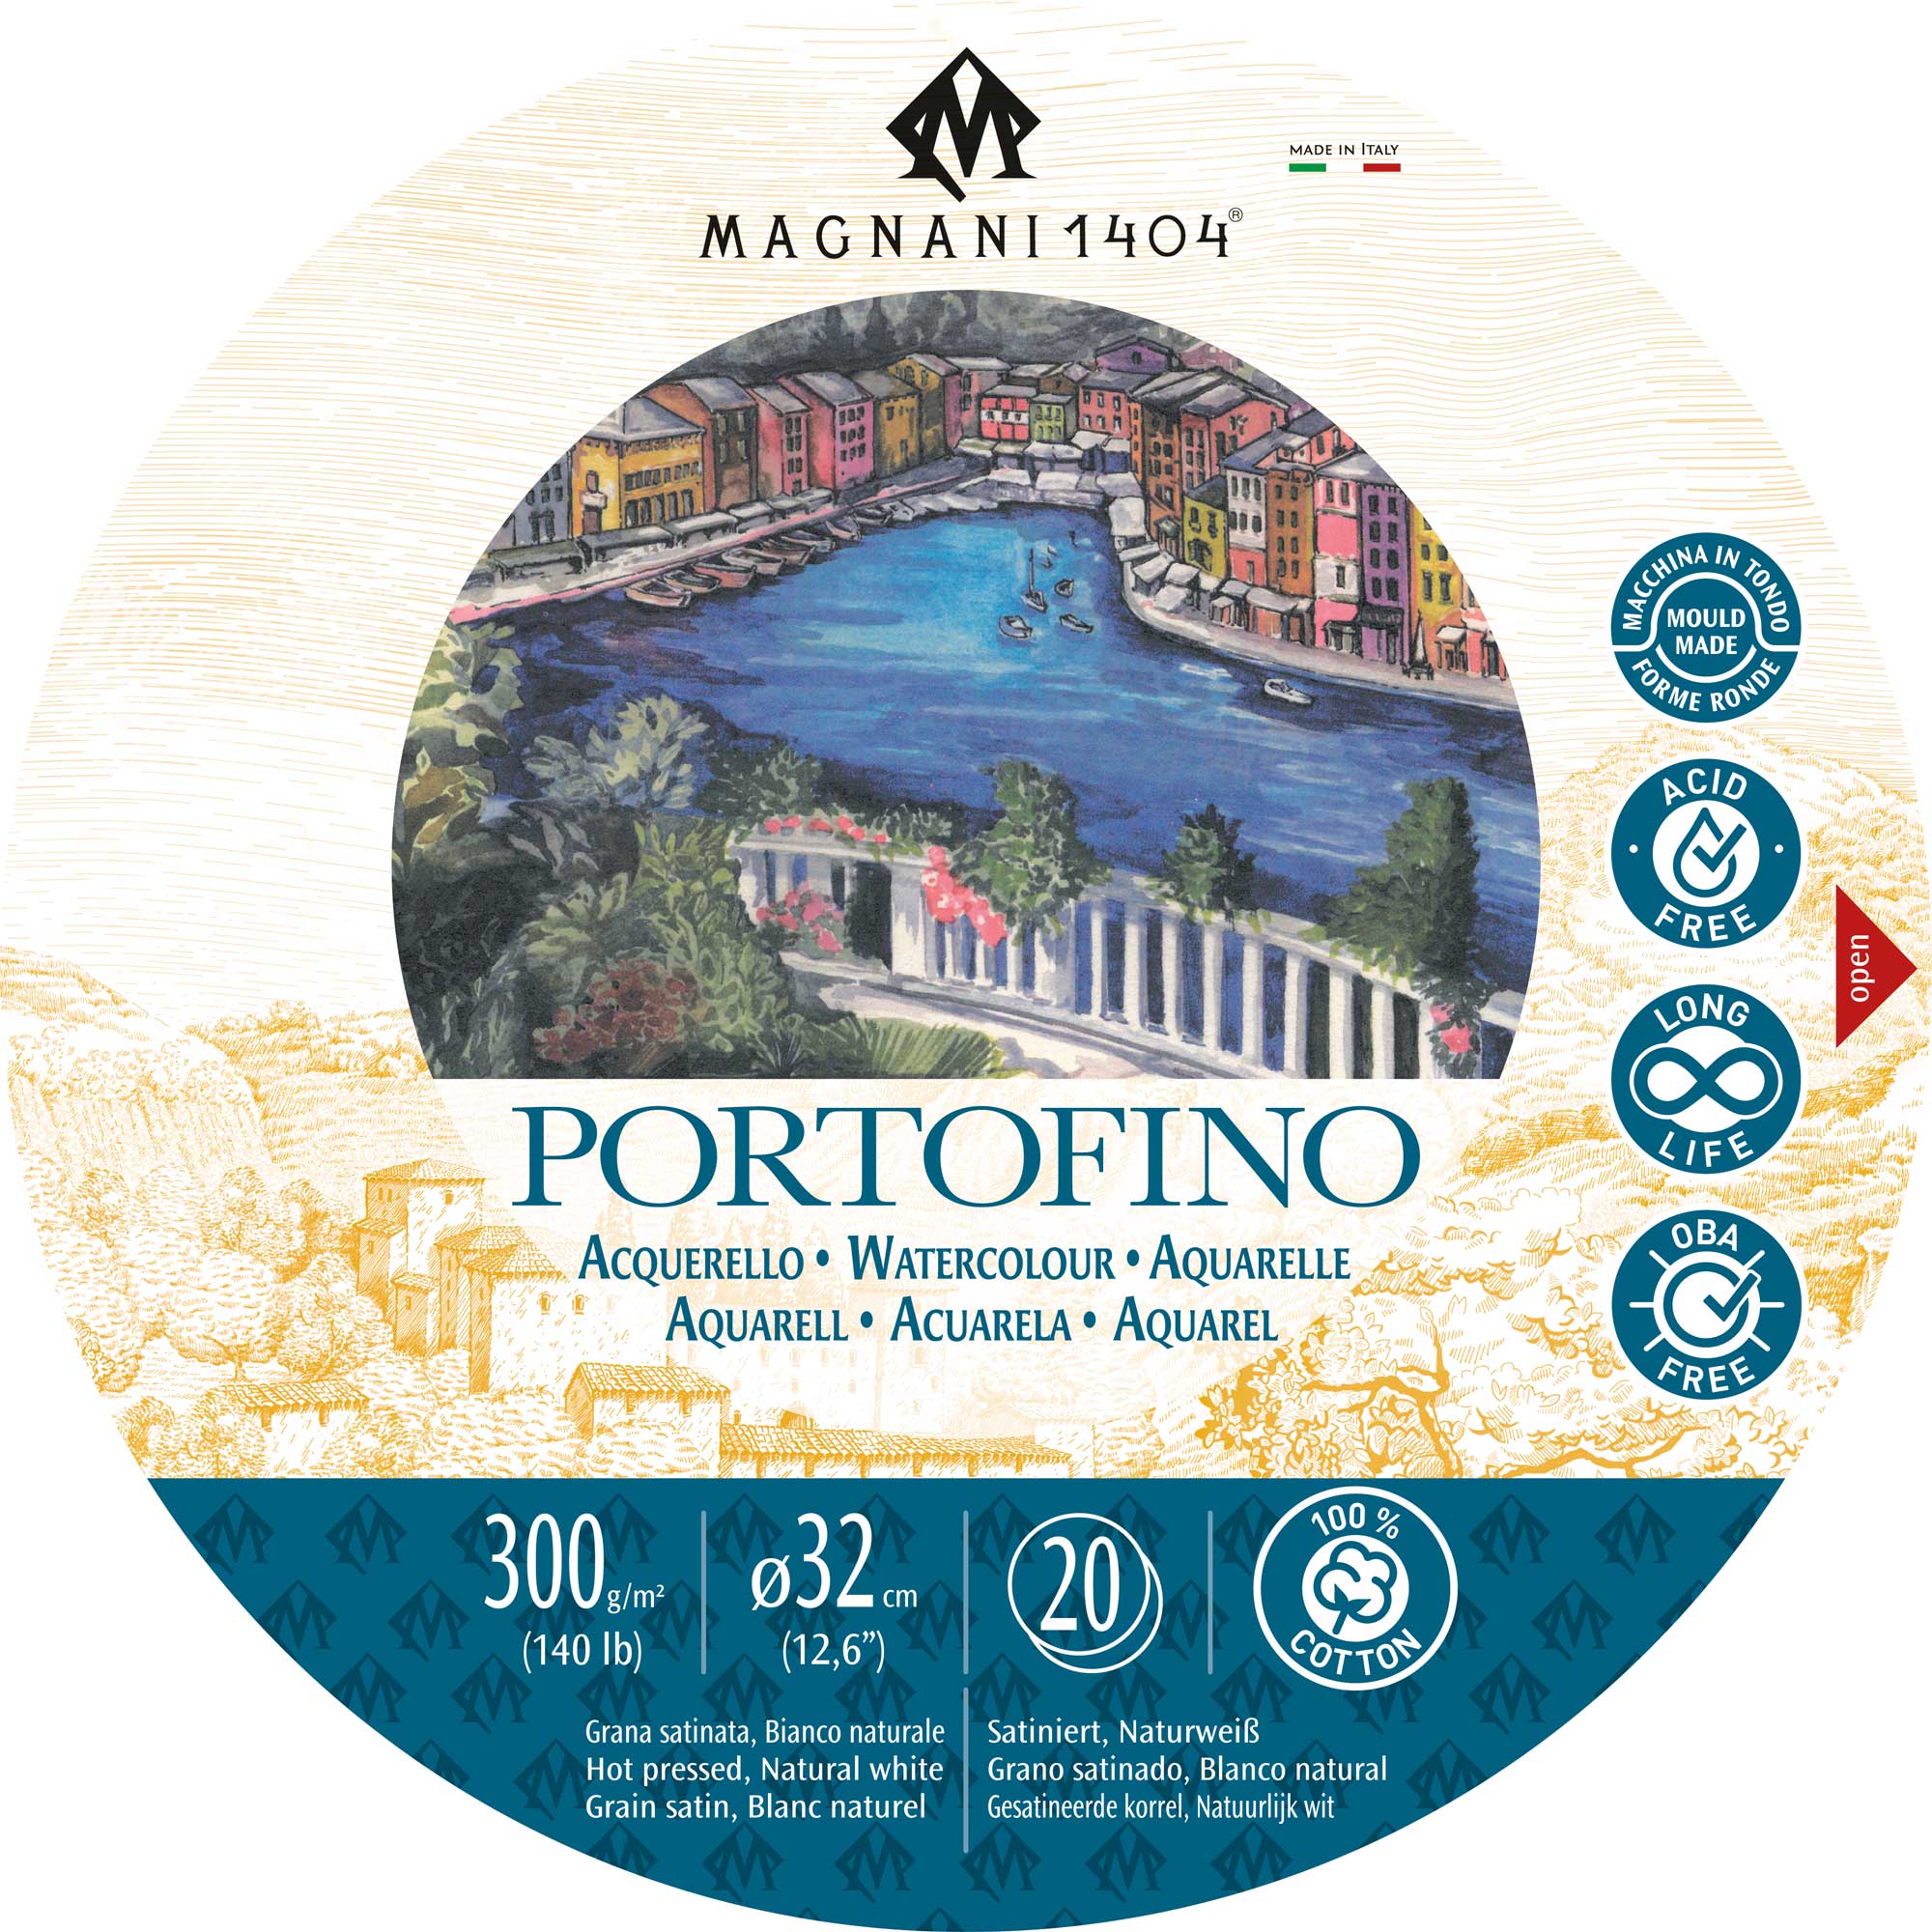 Magnani 1404 Portofino Watercolour Block Round 300gsm 20 Sheets Hot Pressed